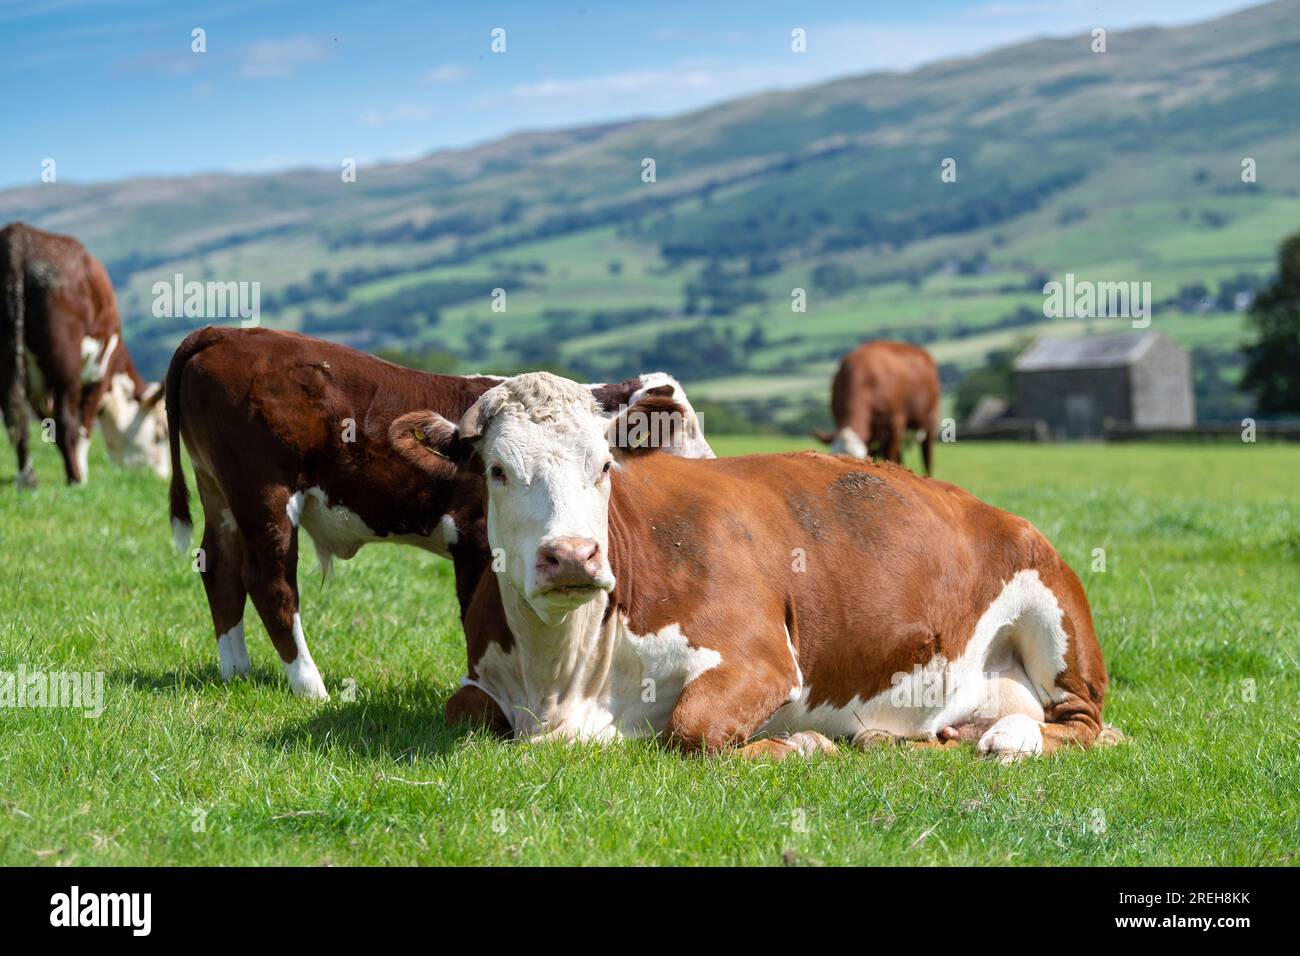 Hereford Rinder, eine einheimische britische Rinderrasse, saßen auf einer üppigen Berglandweide in Cumbria, Großbritannien. Stockfoto